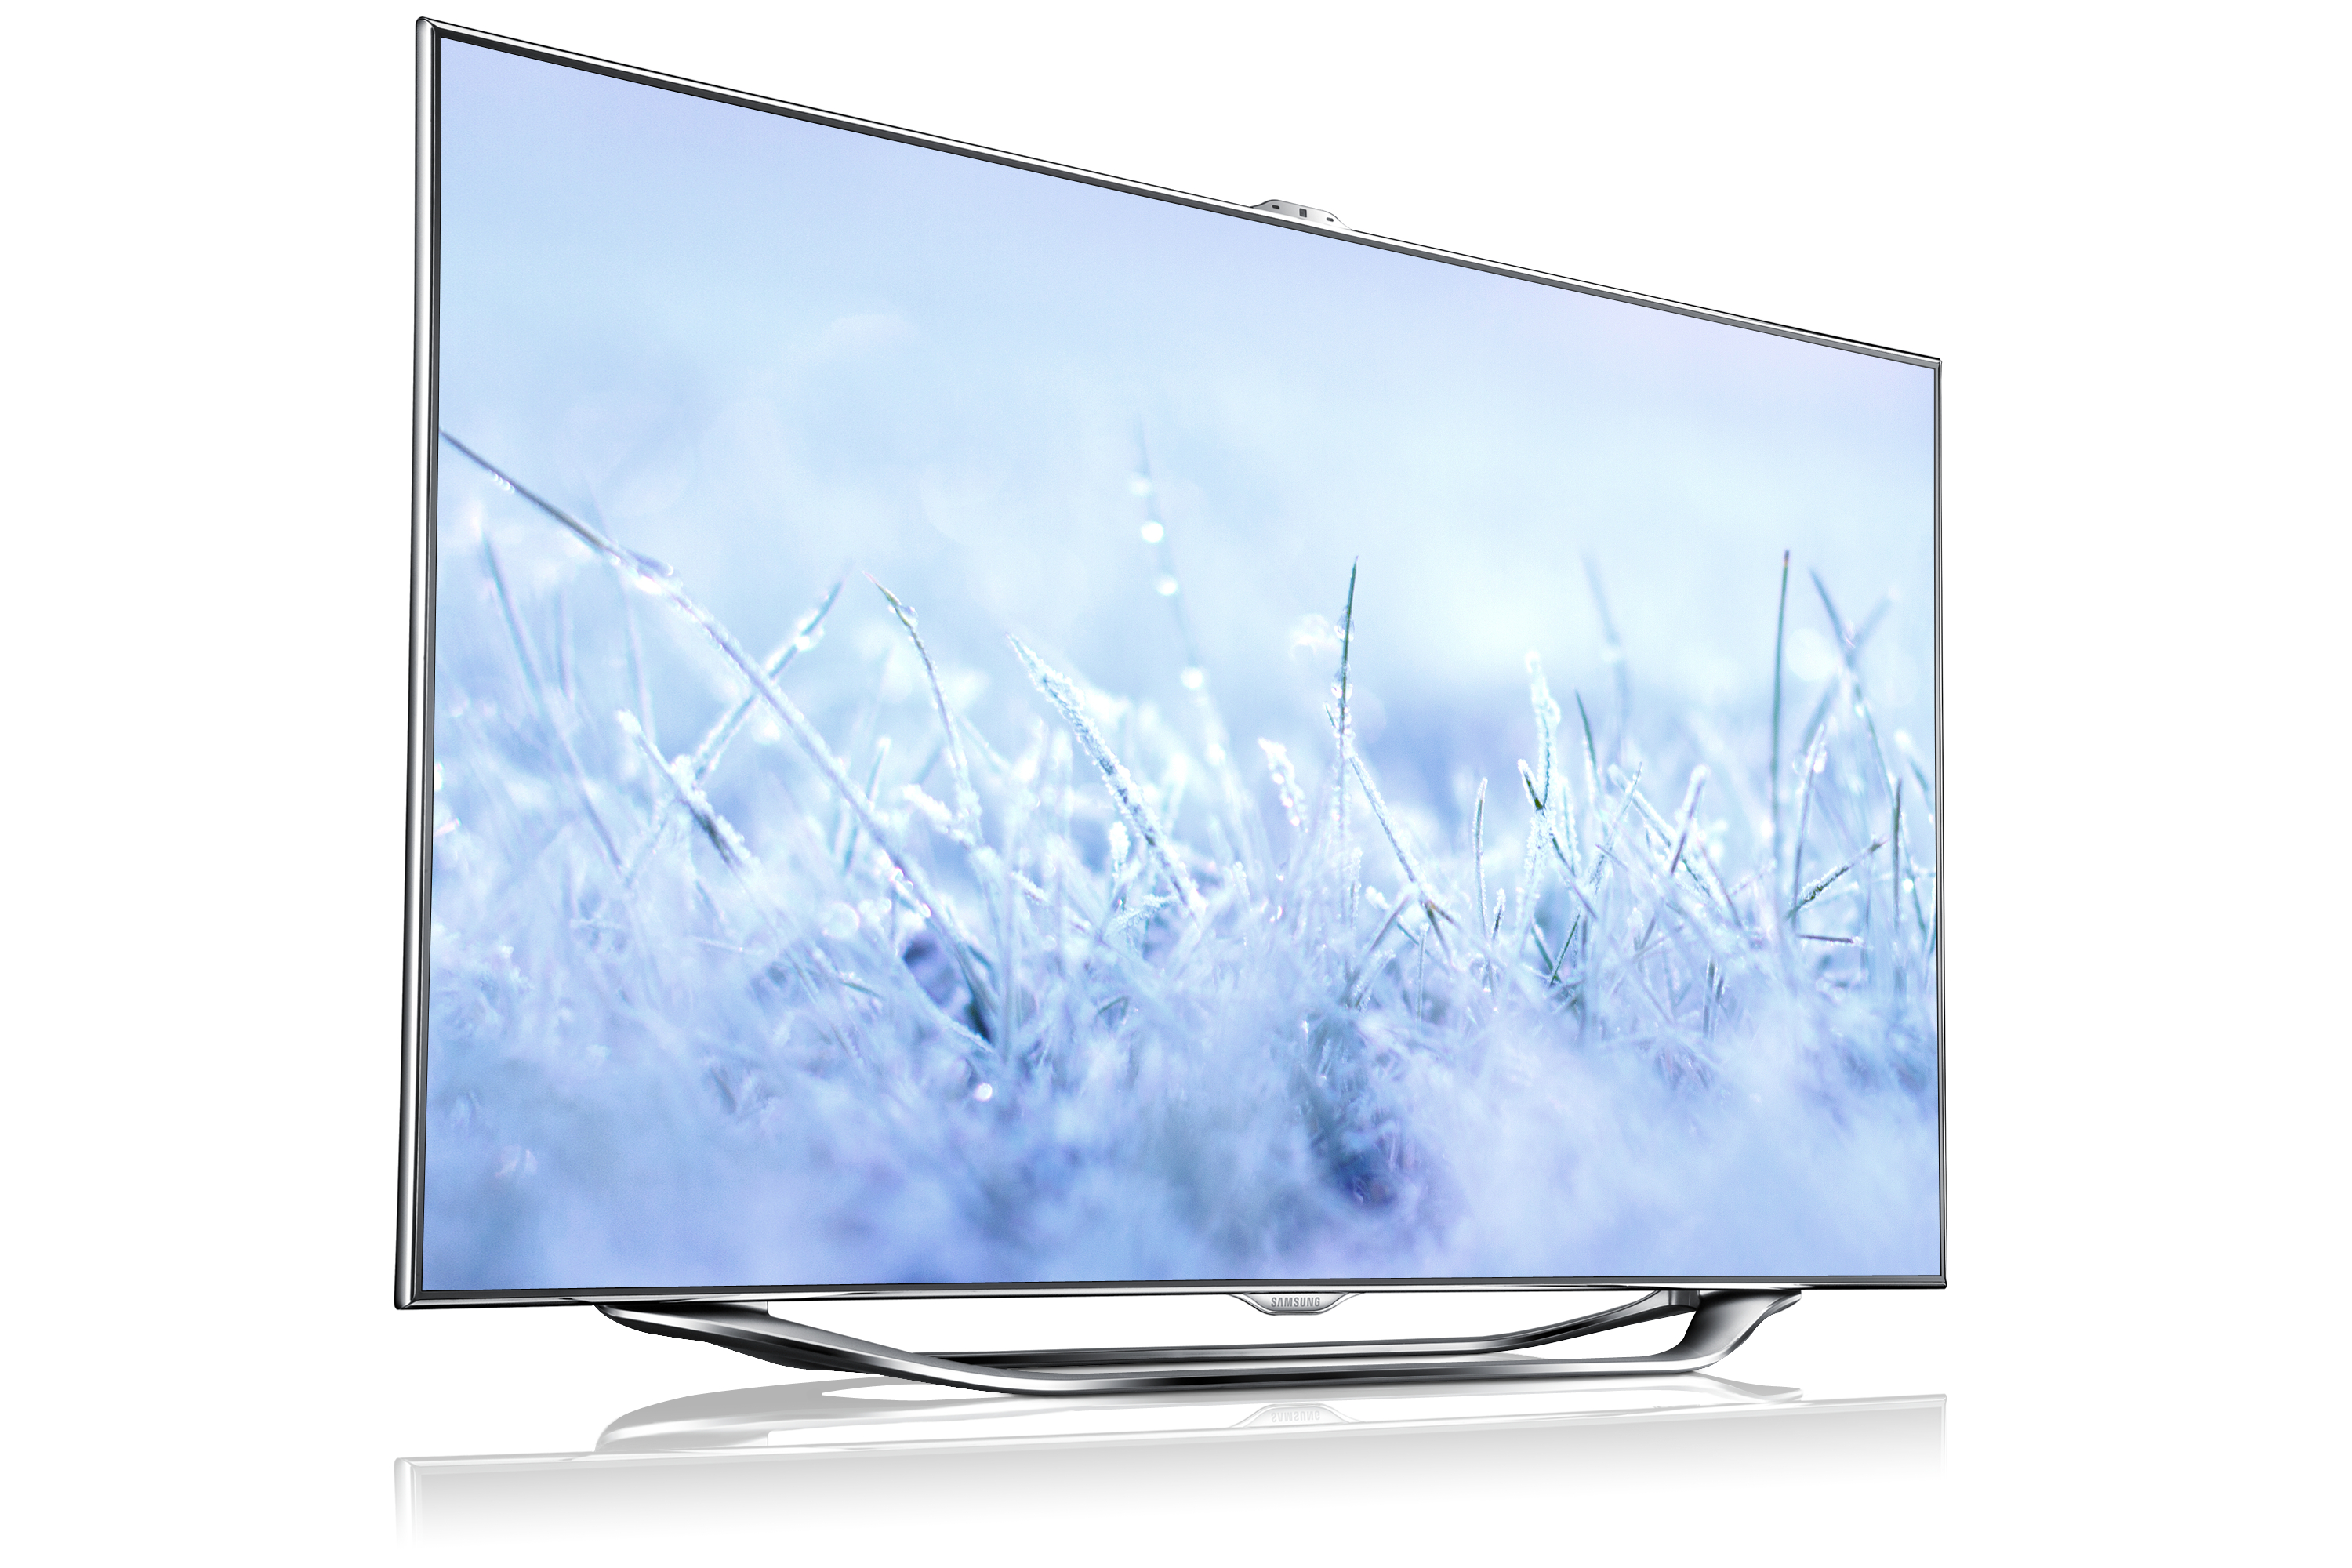 Телевизор Samsung Model